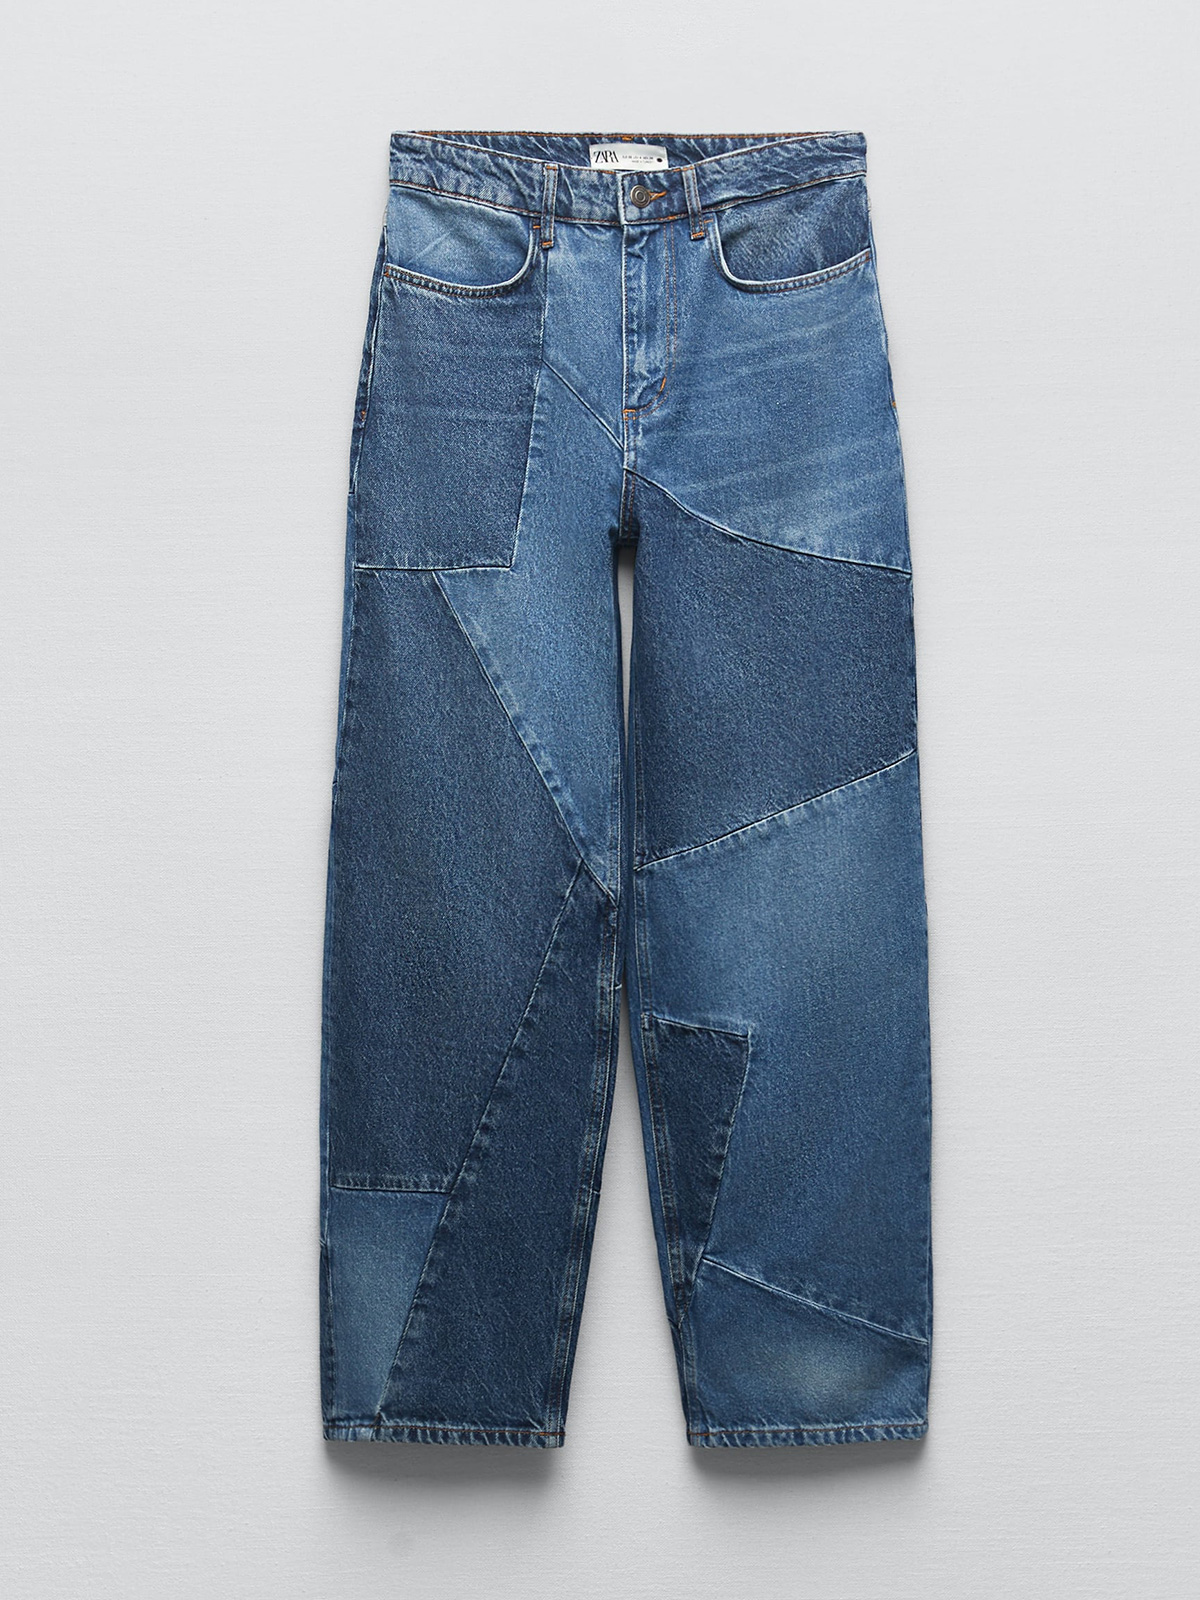 jeans-patchwork-zara